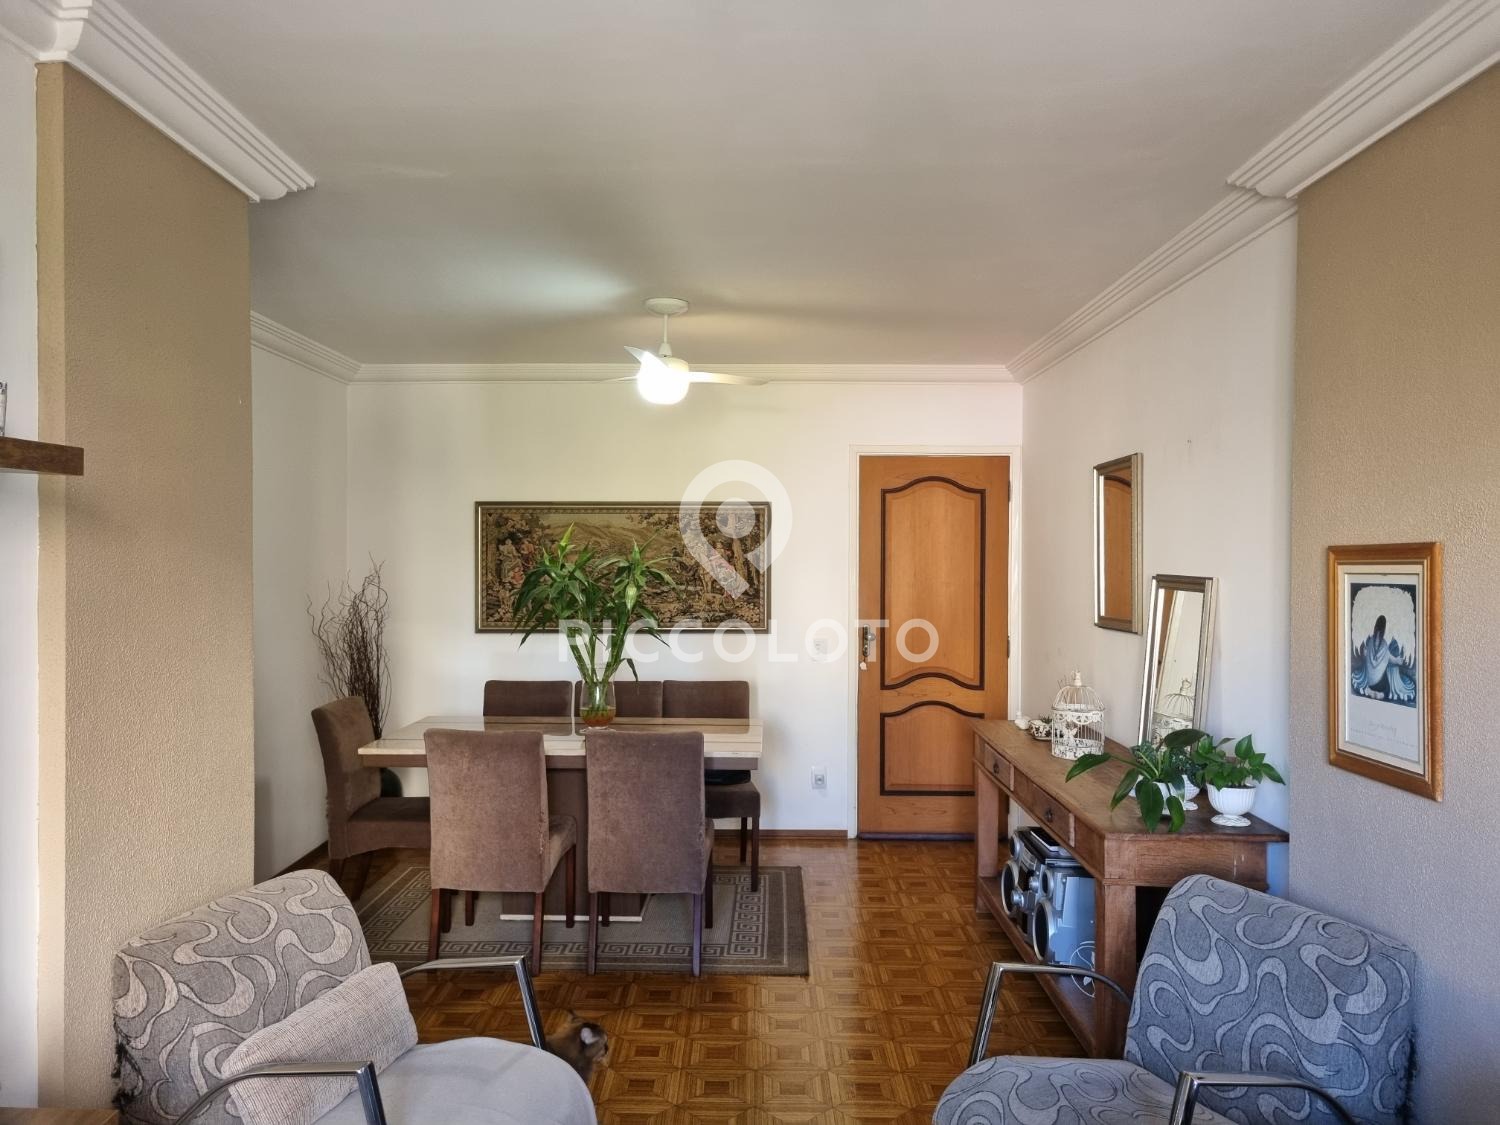 Piccoloto -Apartamento à venda no Vila Paraíso em Campinas